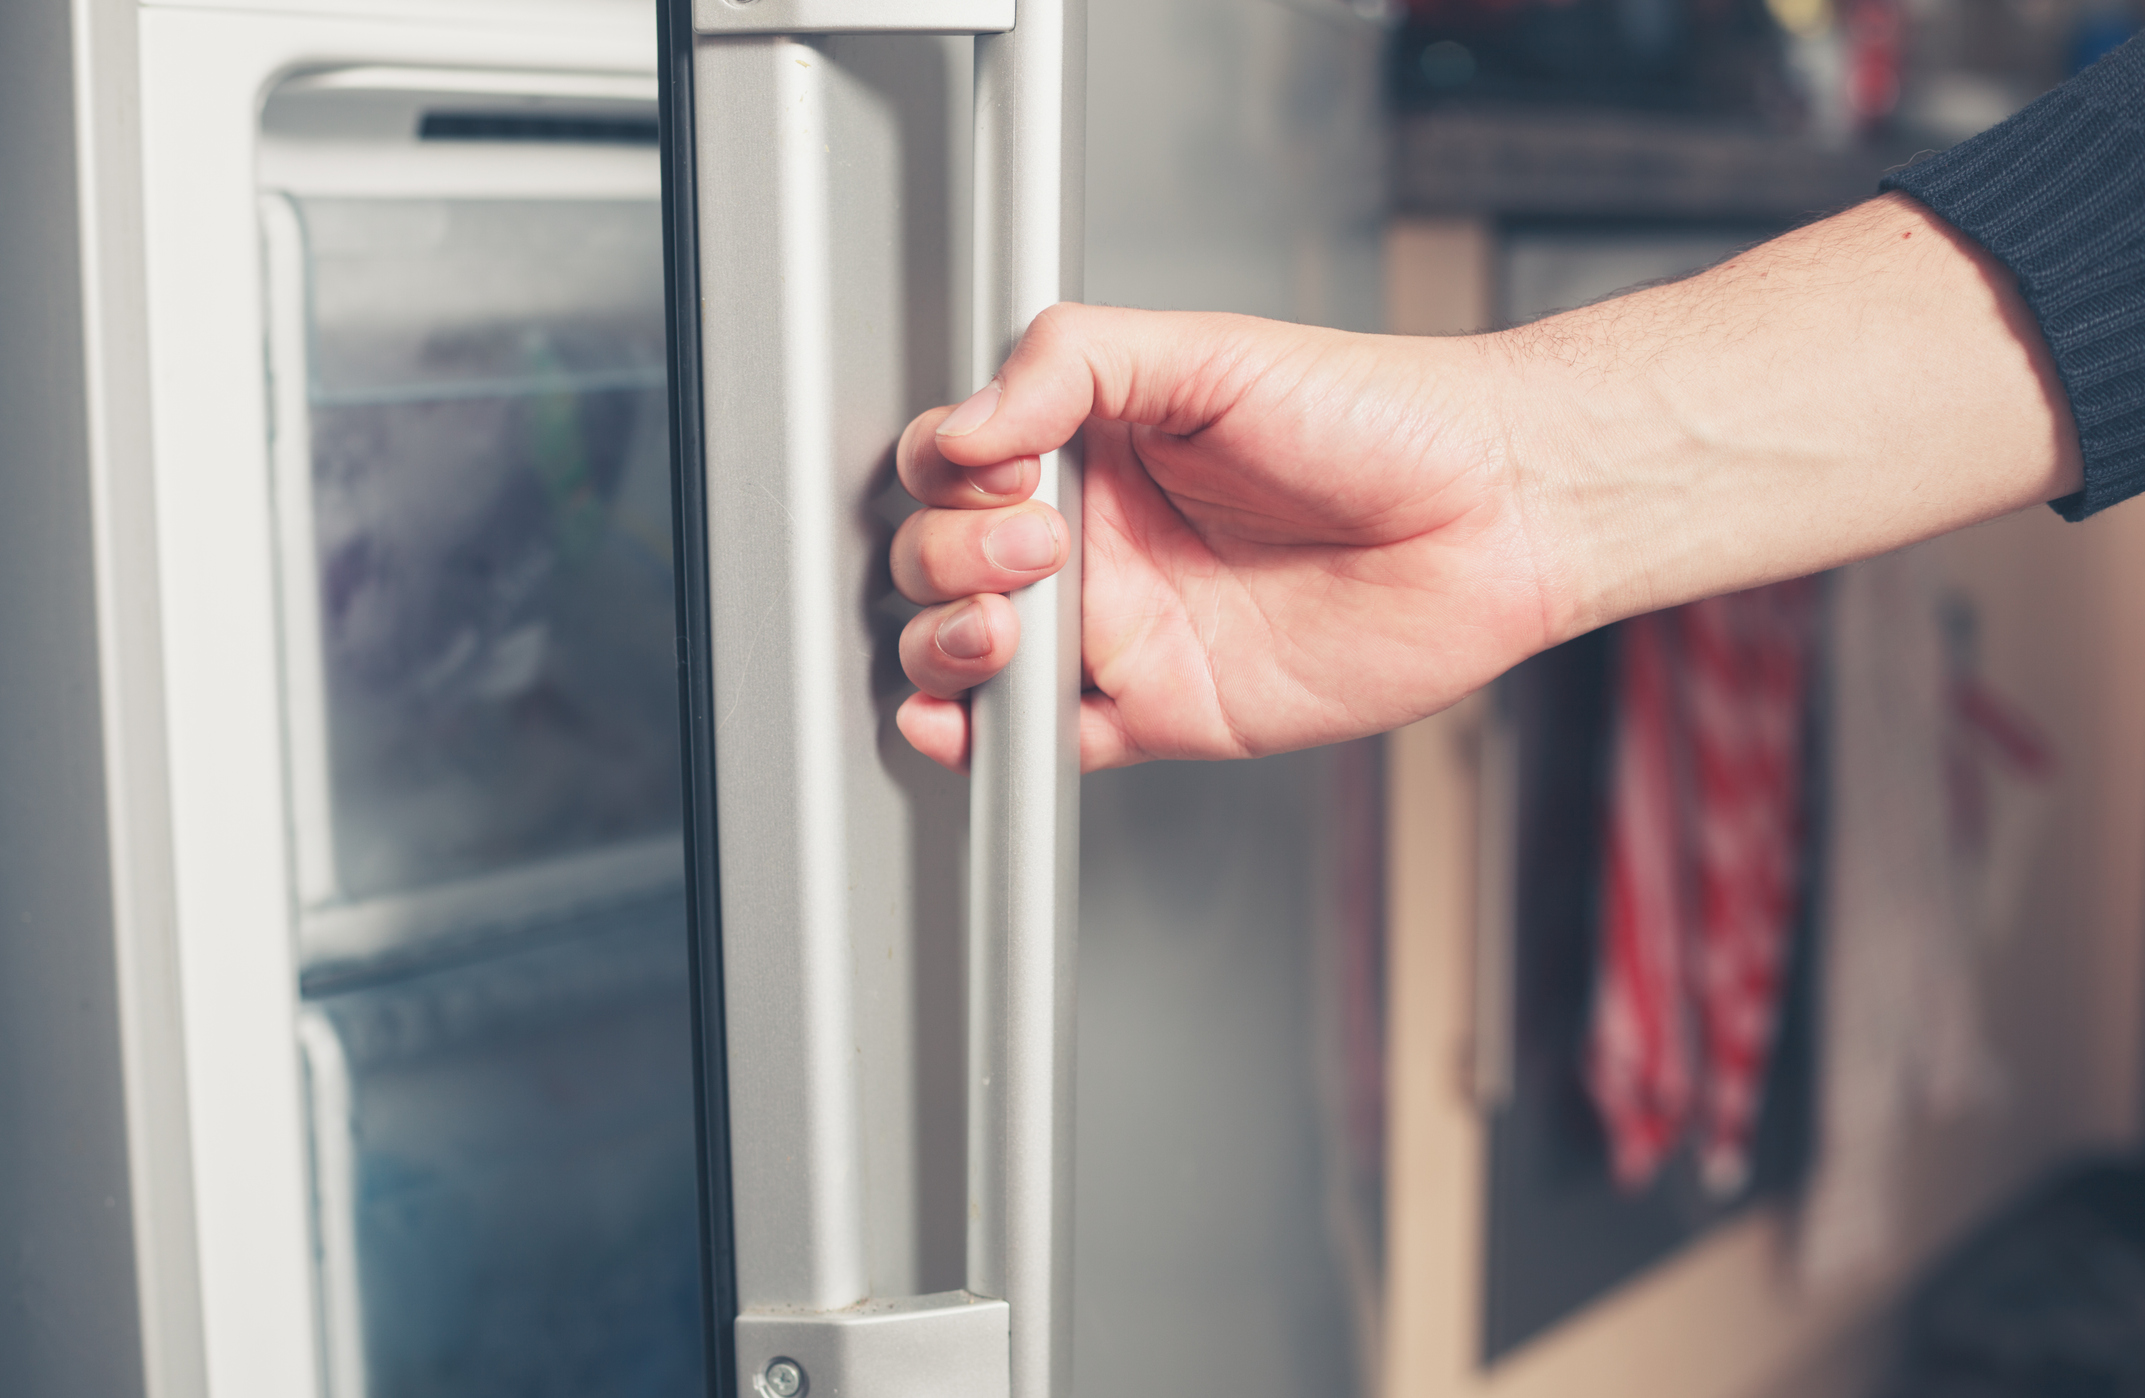 La mano de un varón joven abre la puerta de un congelador